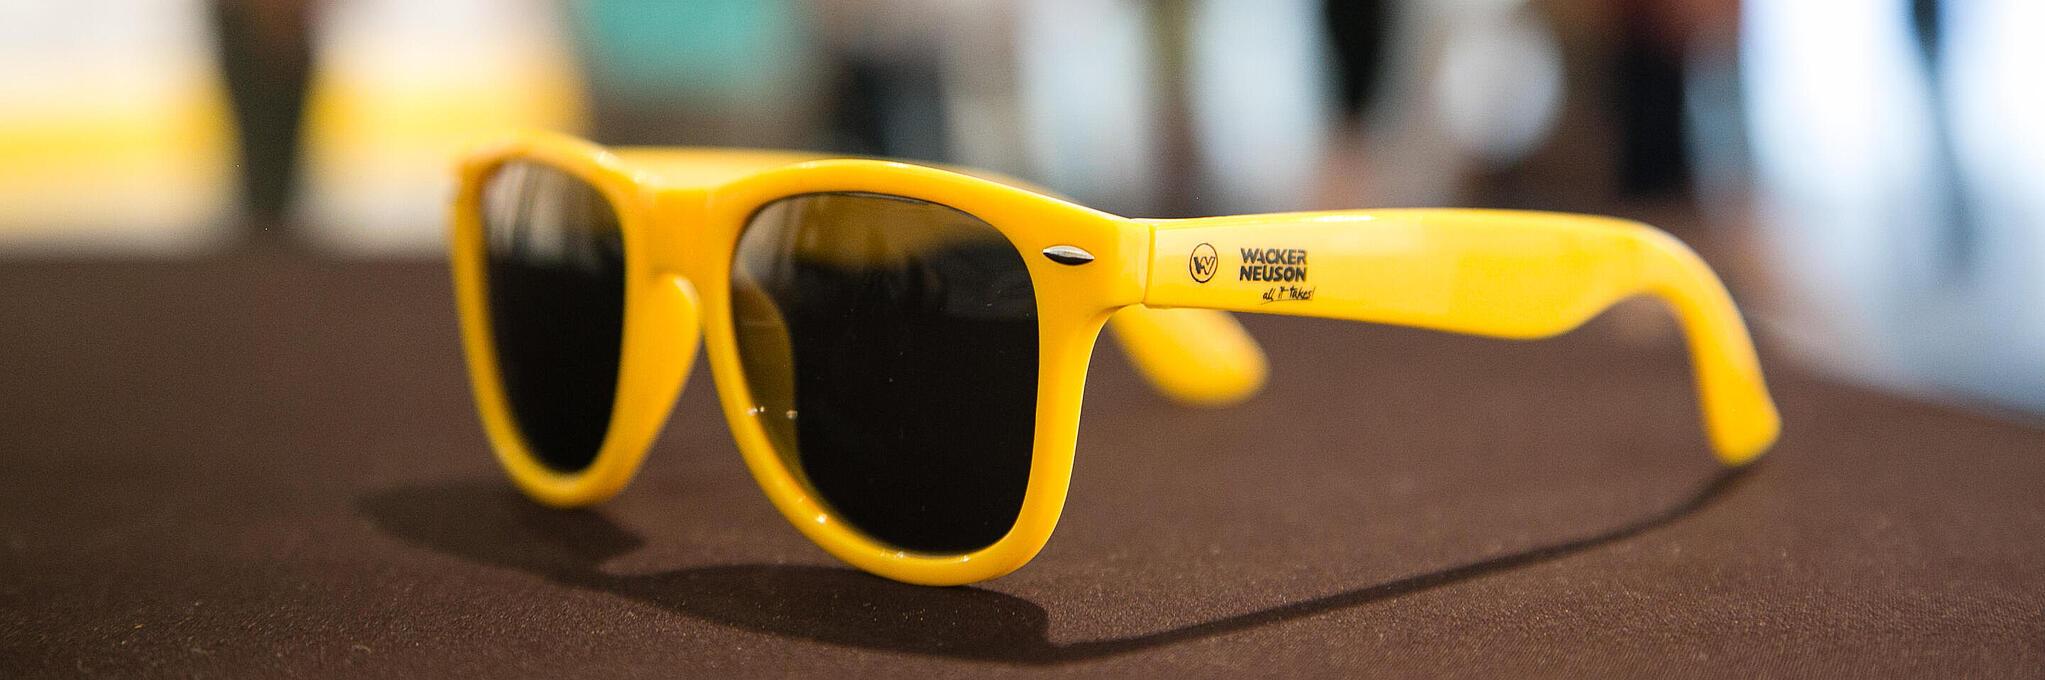 Óculos de sol amarelos com o logotipo da Wacker Neuson.